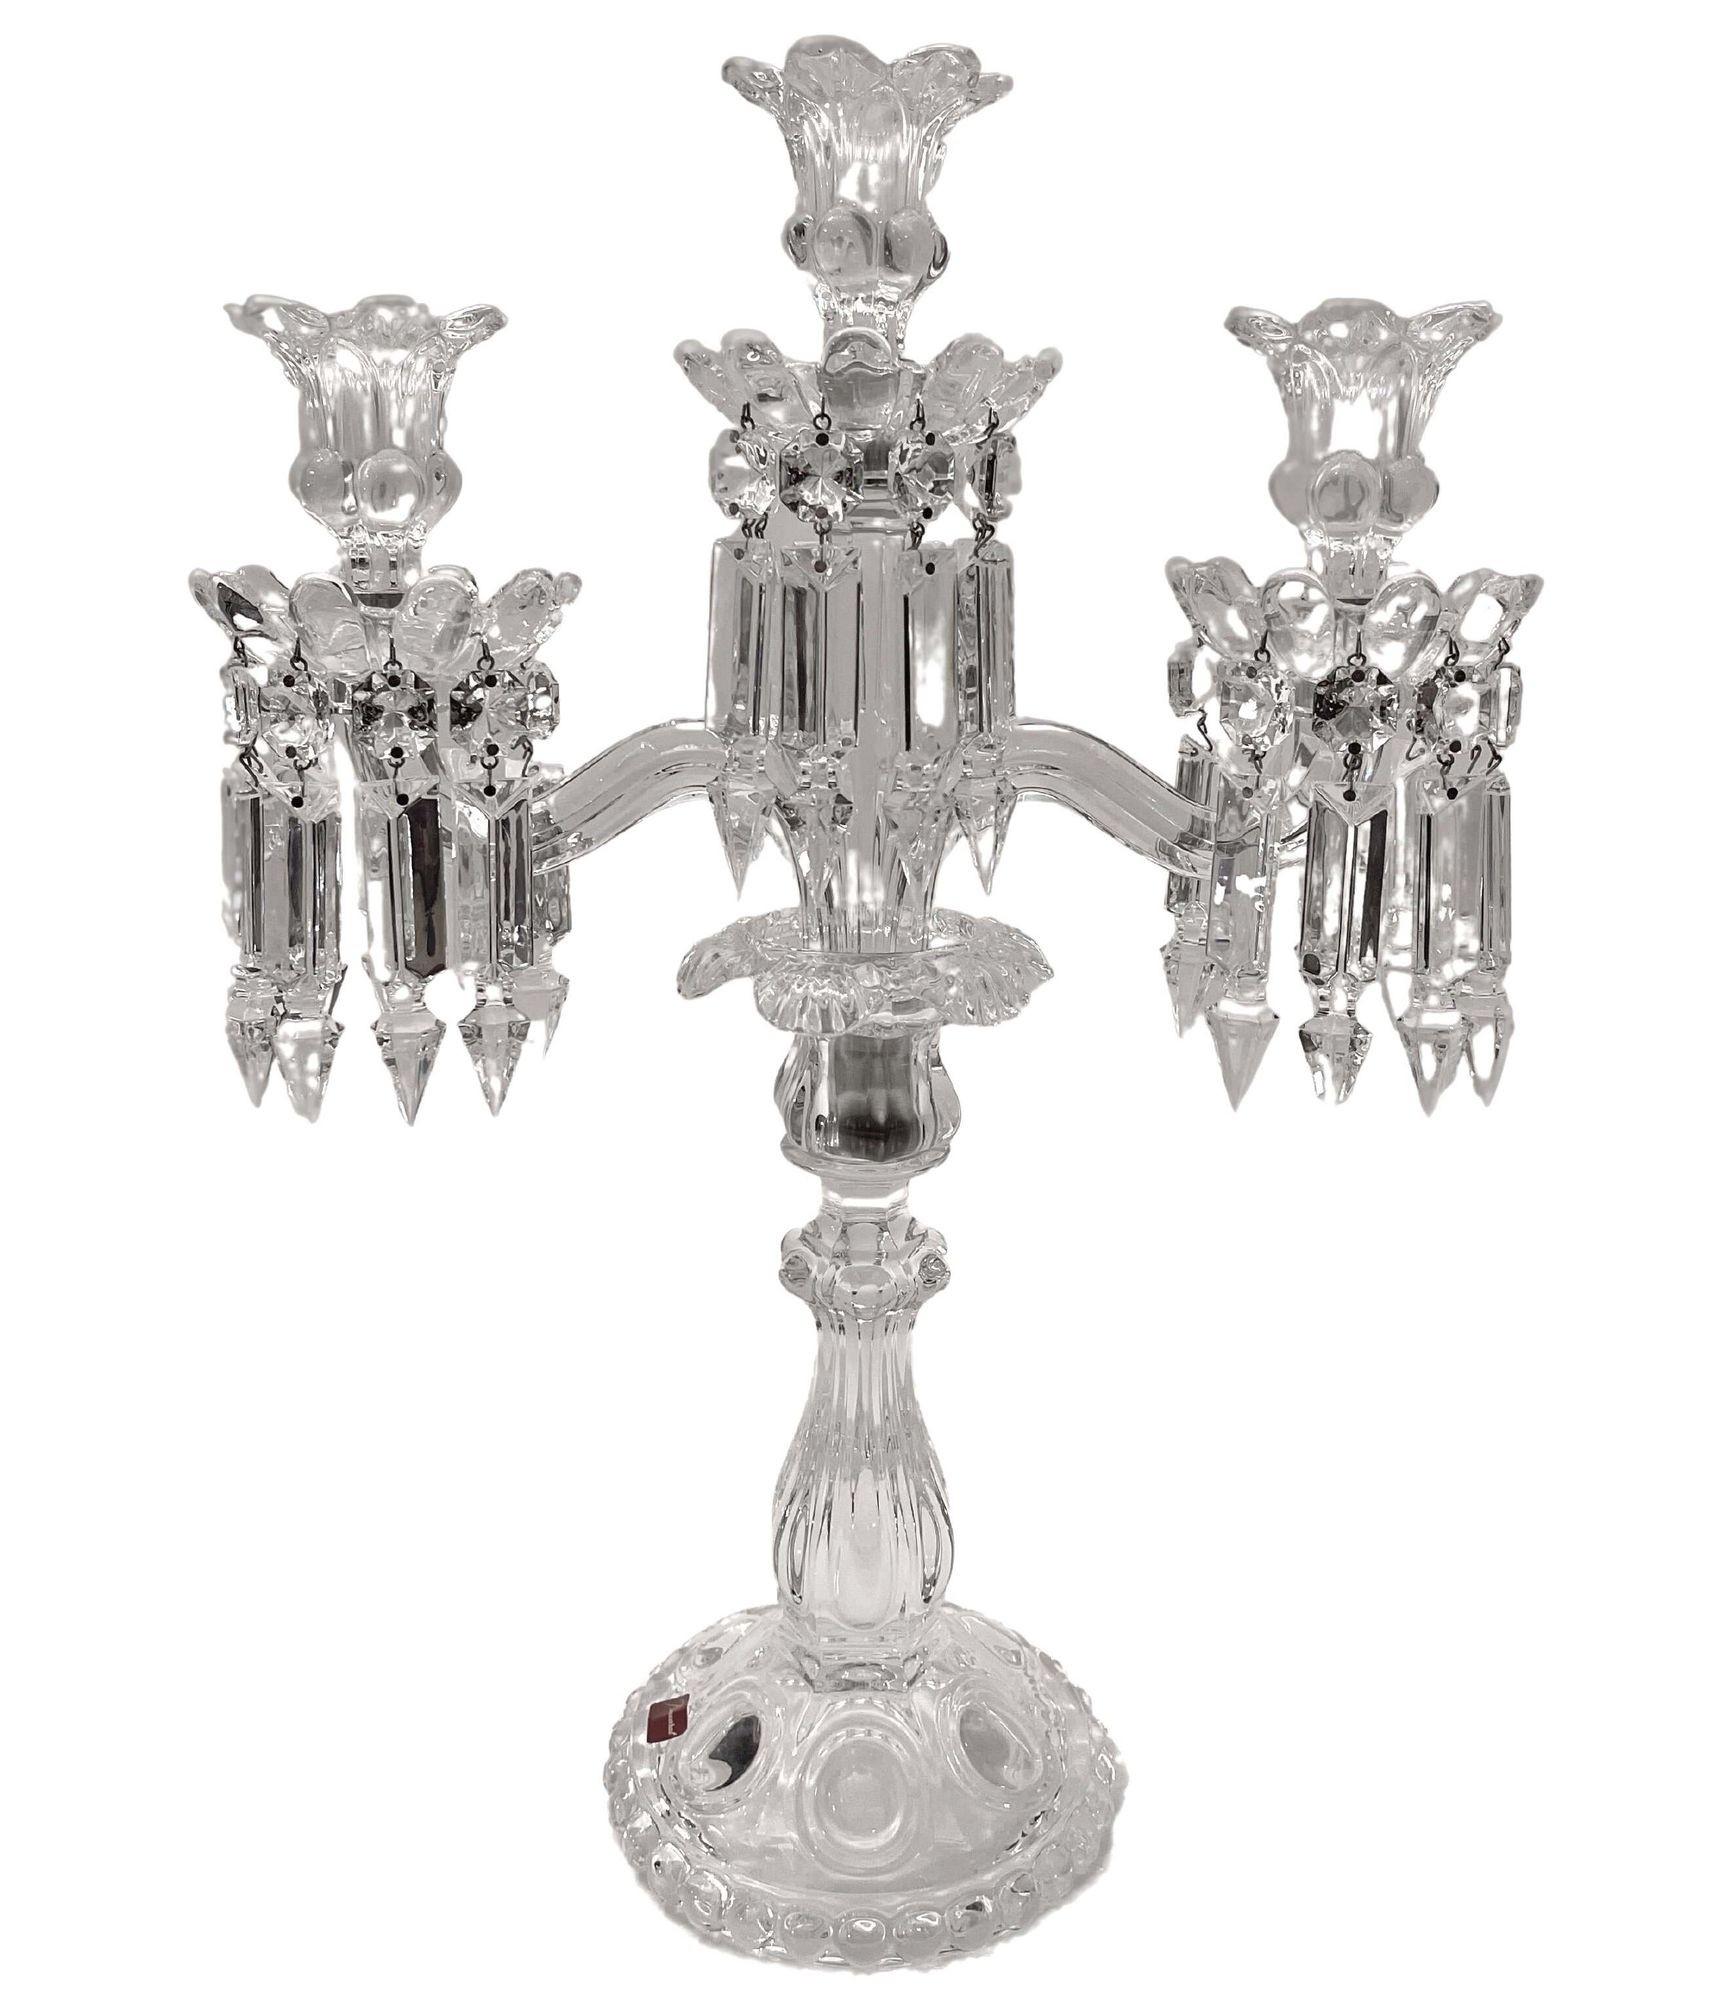 Paire de chandeliers obélisques en verre néoclassique du milieu du siècle dernier par Baccarat. Cristal translucide soufflé à la main, gravé et biseauté. Ils présentent également des bases circulaires festonnées avec des détails de démilune ainsi